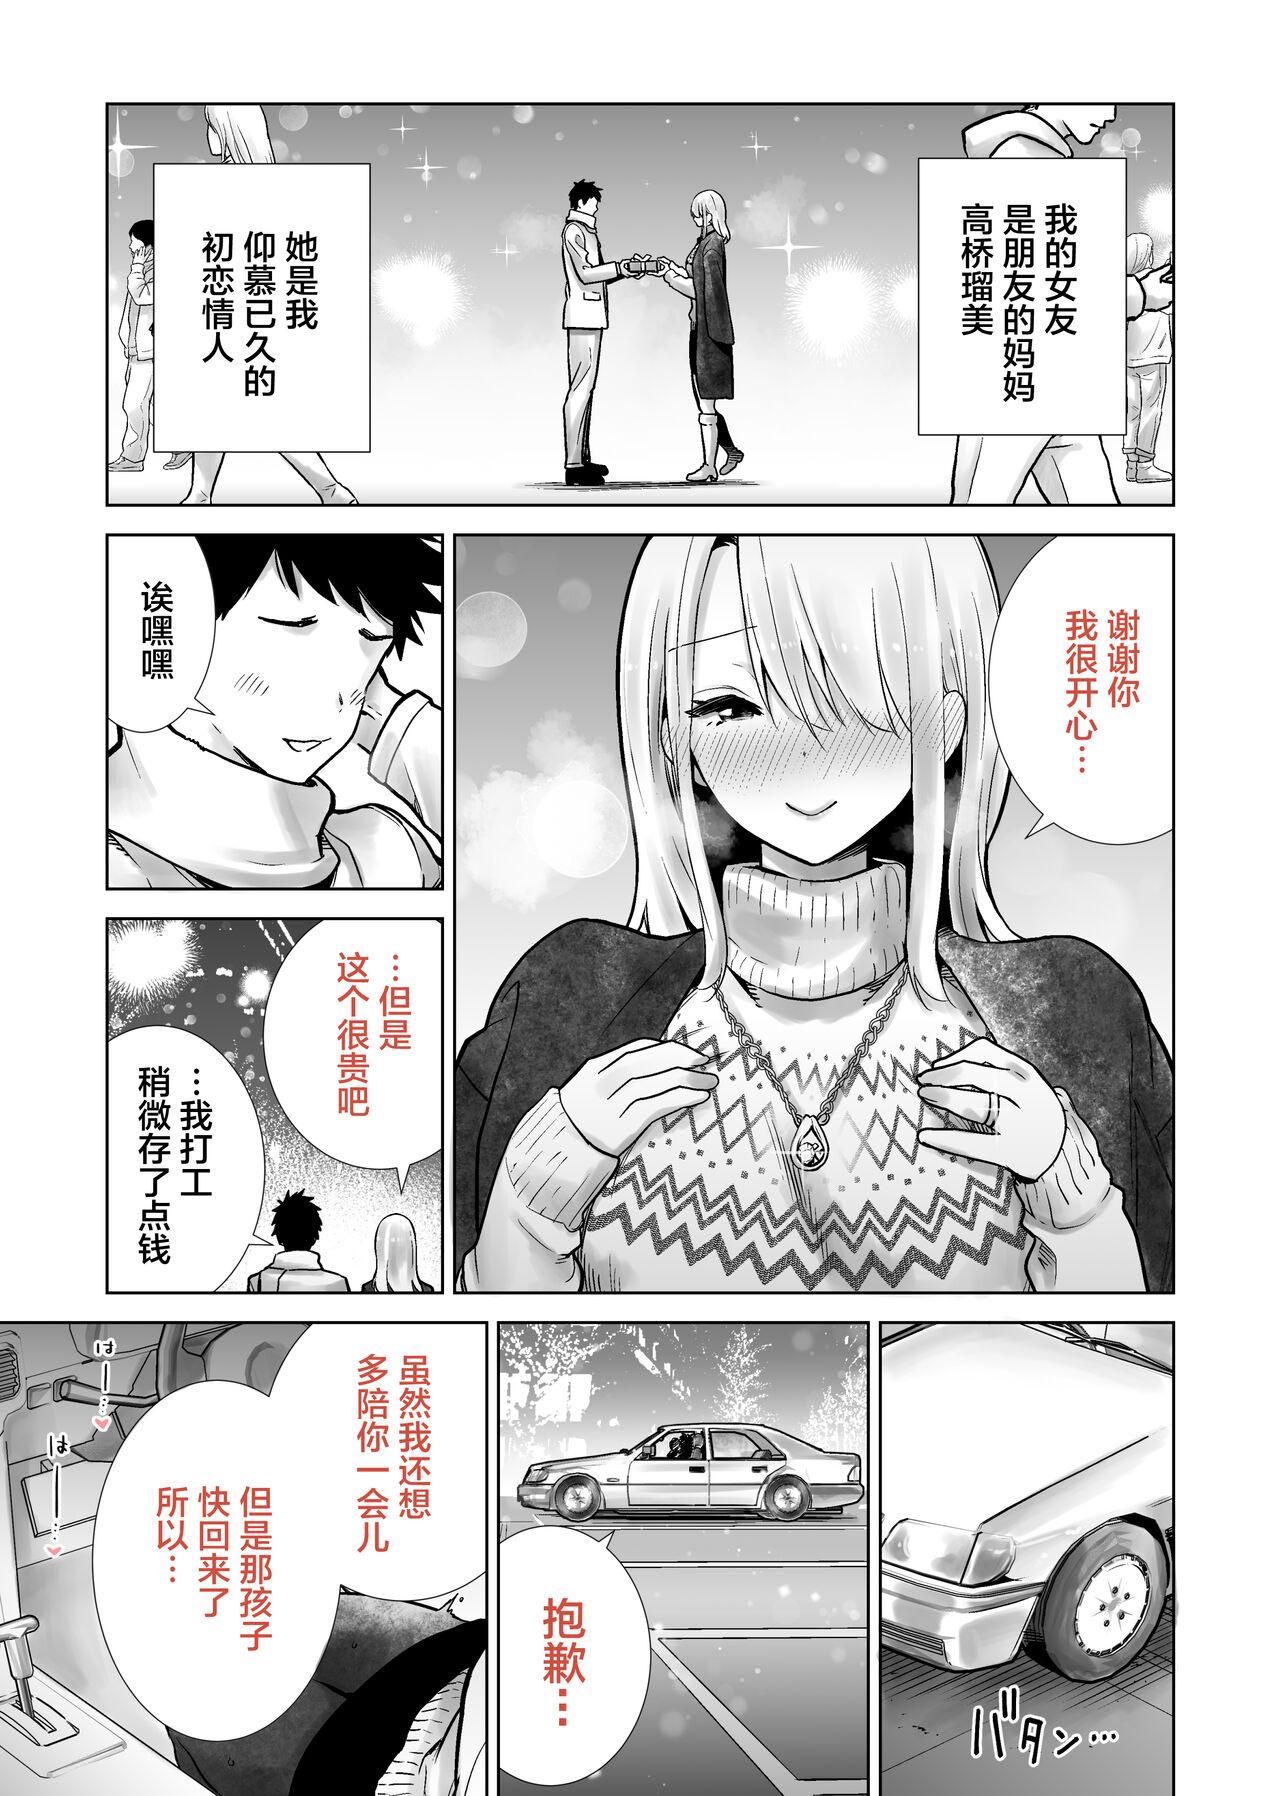 Euro Tomodachi no Mama ga Boku no Dekachin de Ikimakutta Christmas Eve - Original Chinese - Page 3